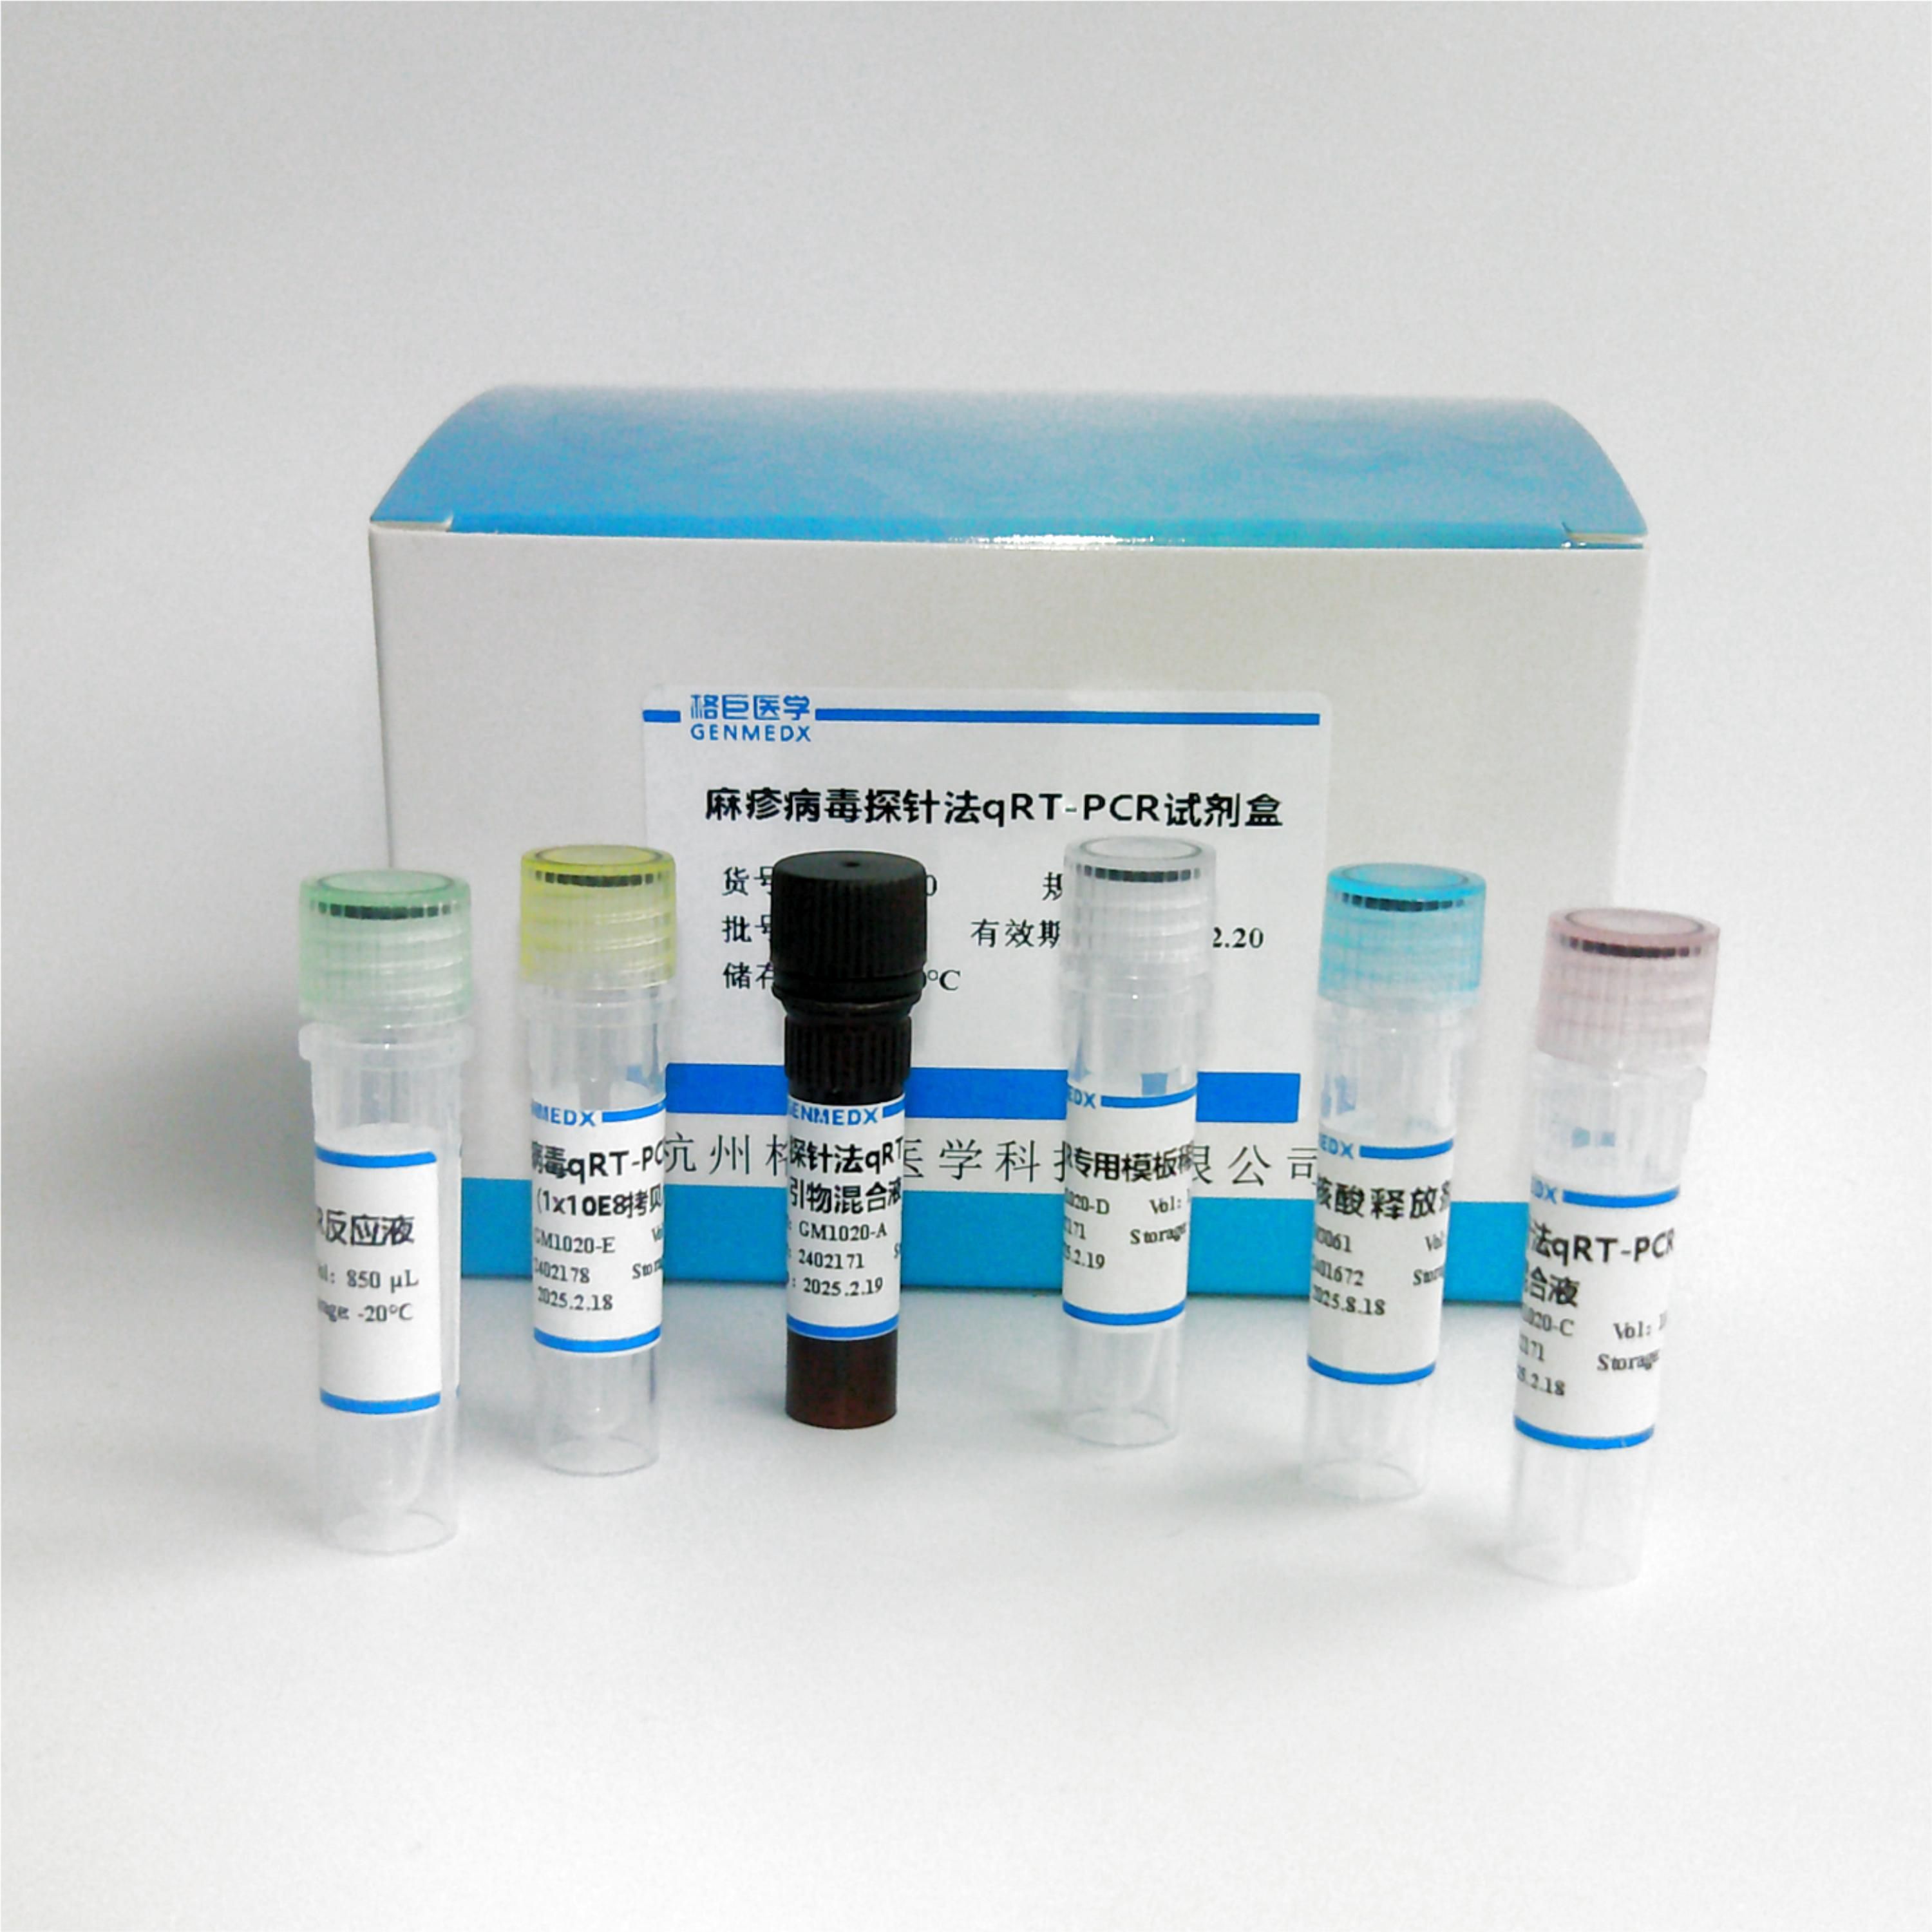 中东/呼吸综合征冠状病毒(MERS)探针法荧光定量RT-PCR试剂盒